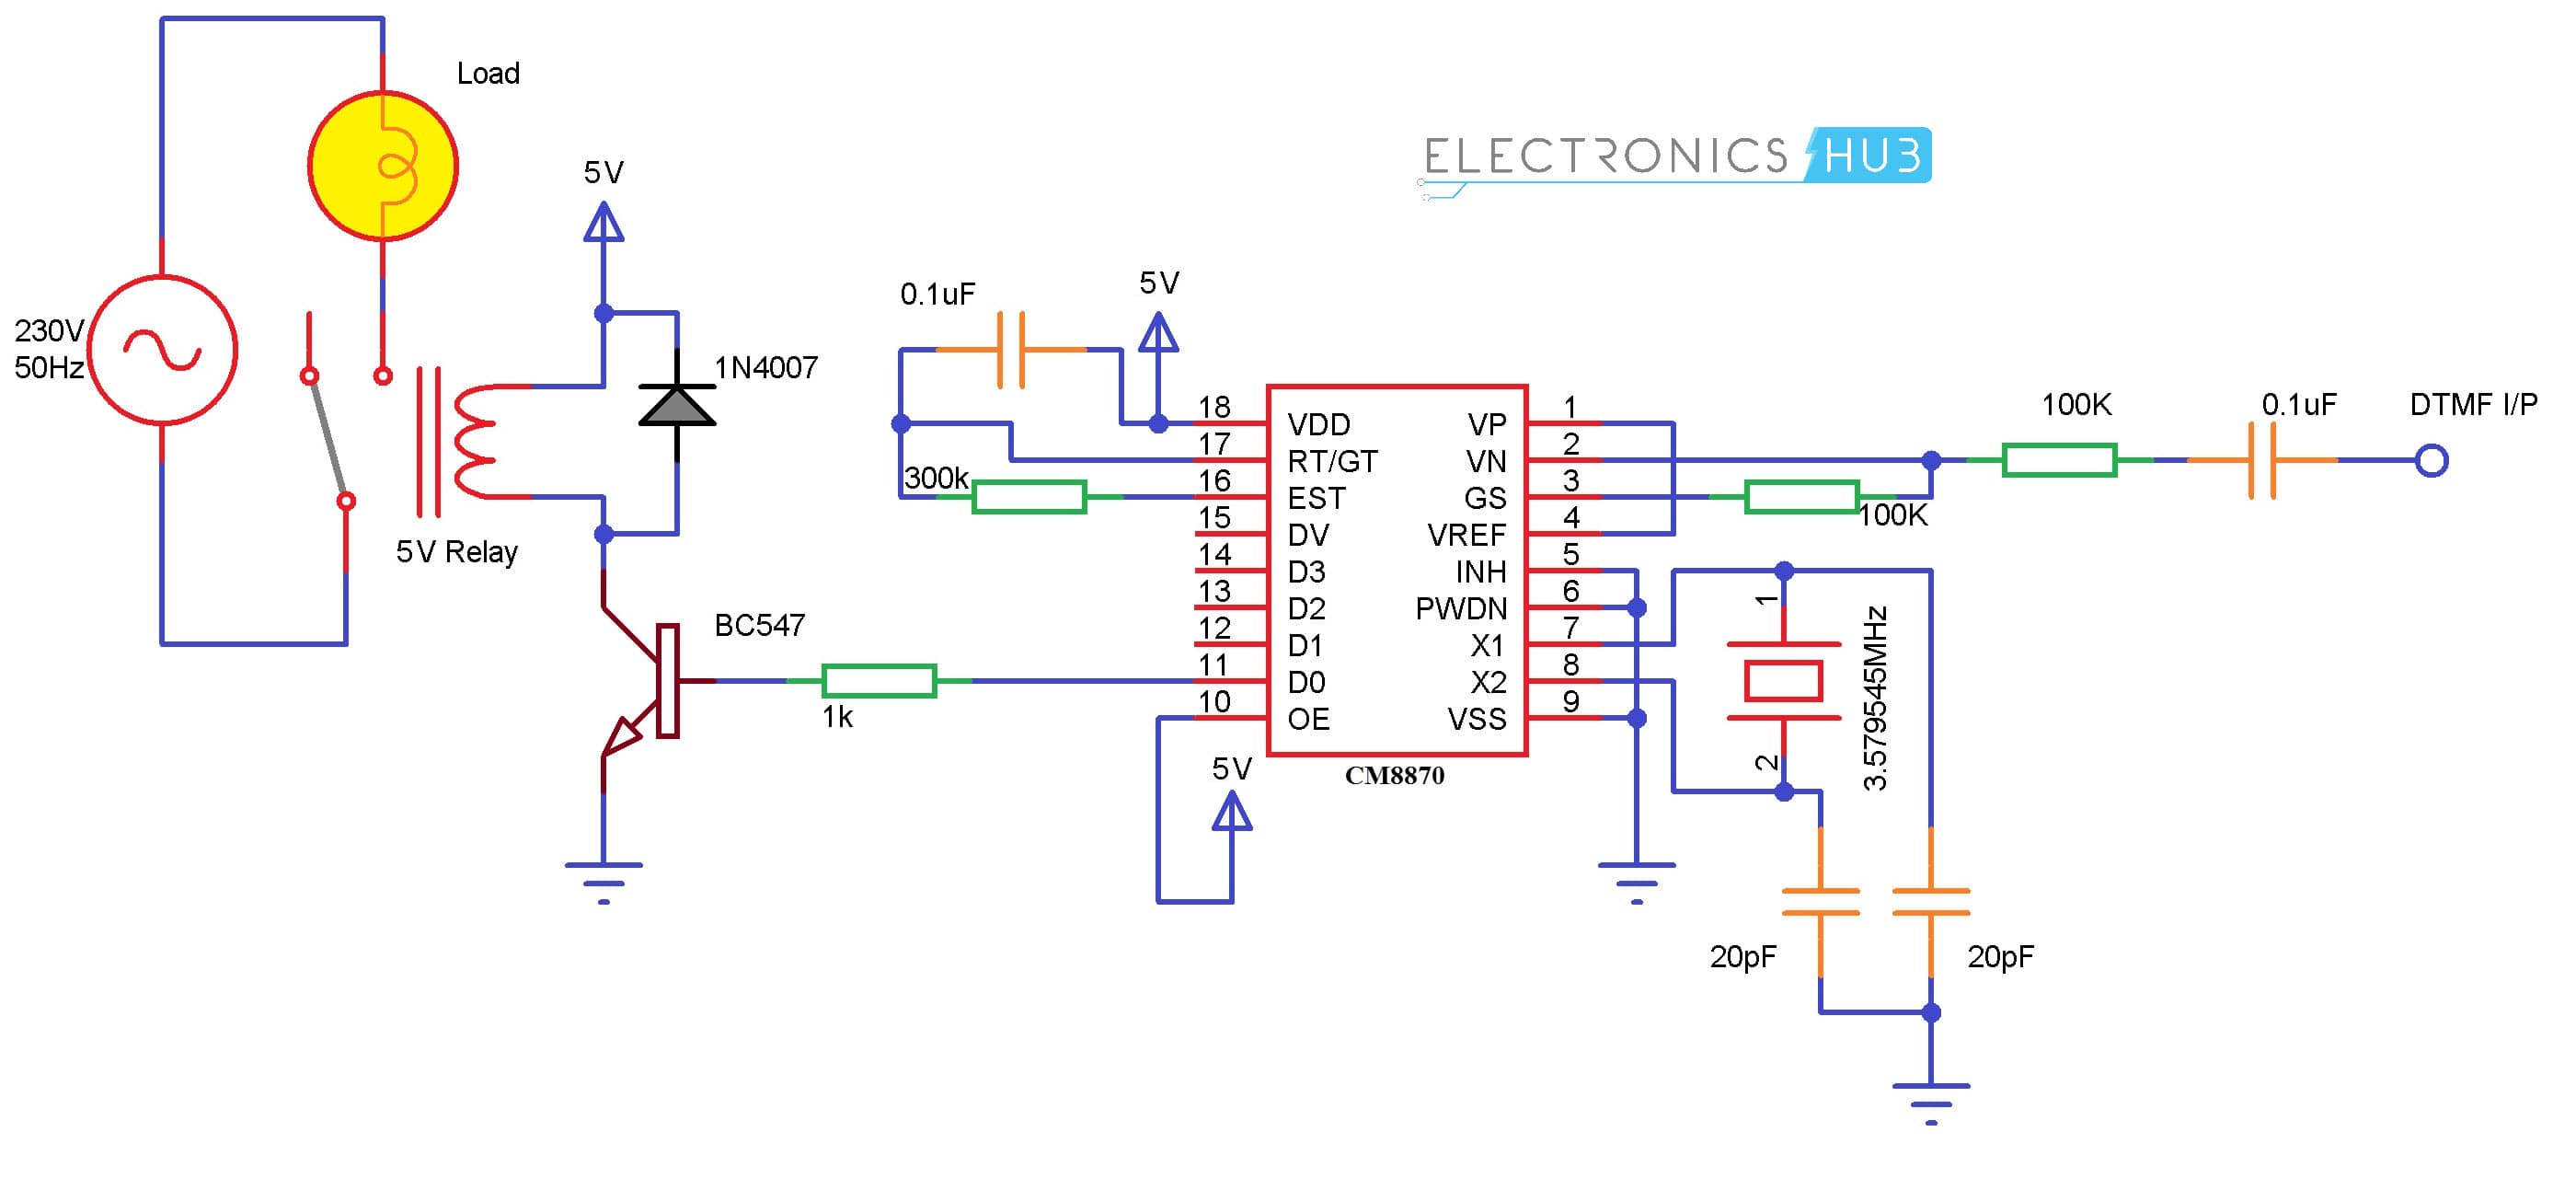 无微控制器移动控制家用电器电路图